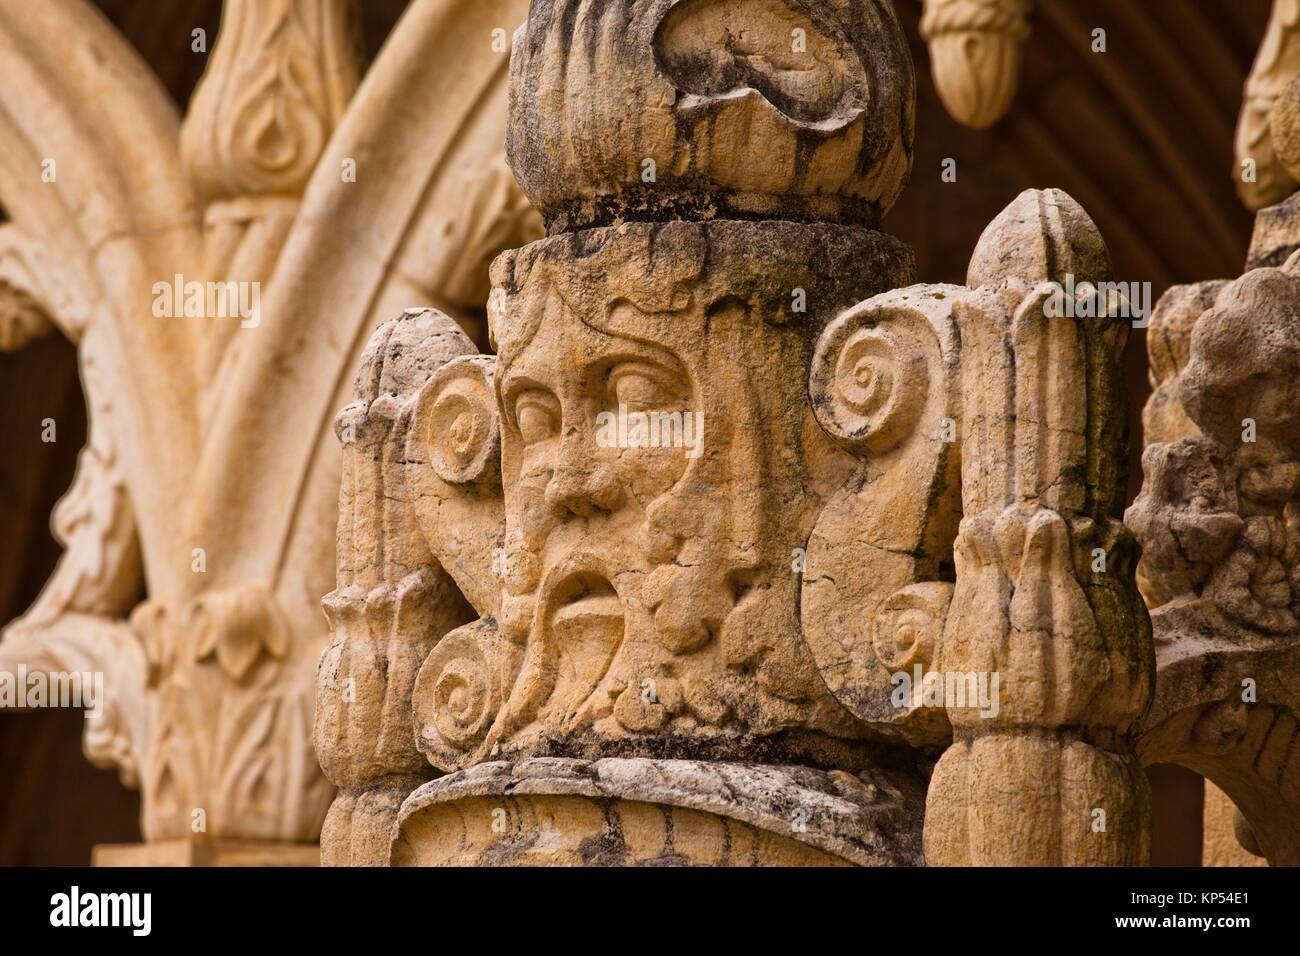 Ornamentación manuelino en el claustro del monasterio de Los Jerónimos, o el monasterio de Hieronymites, distrito de Belem, Lisboa, Portugal, Europa. Foto de stock